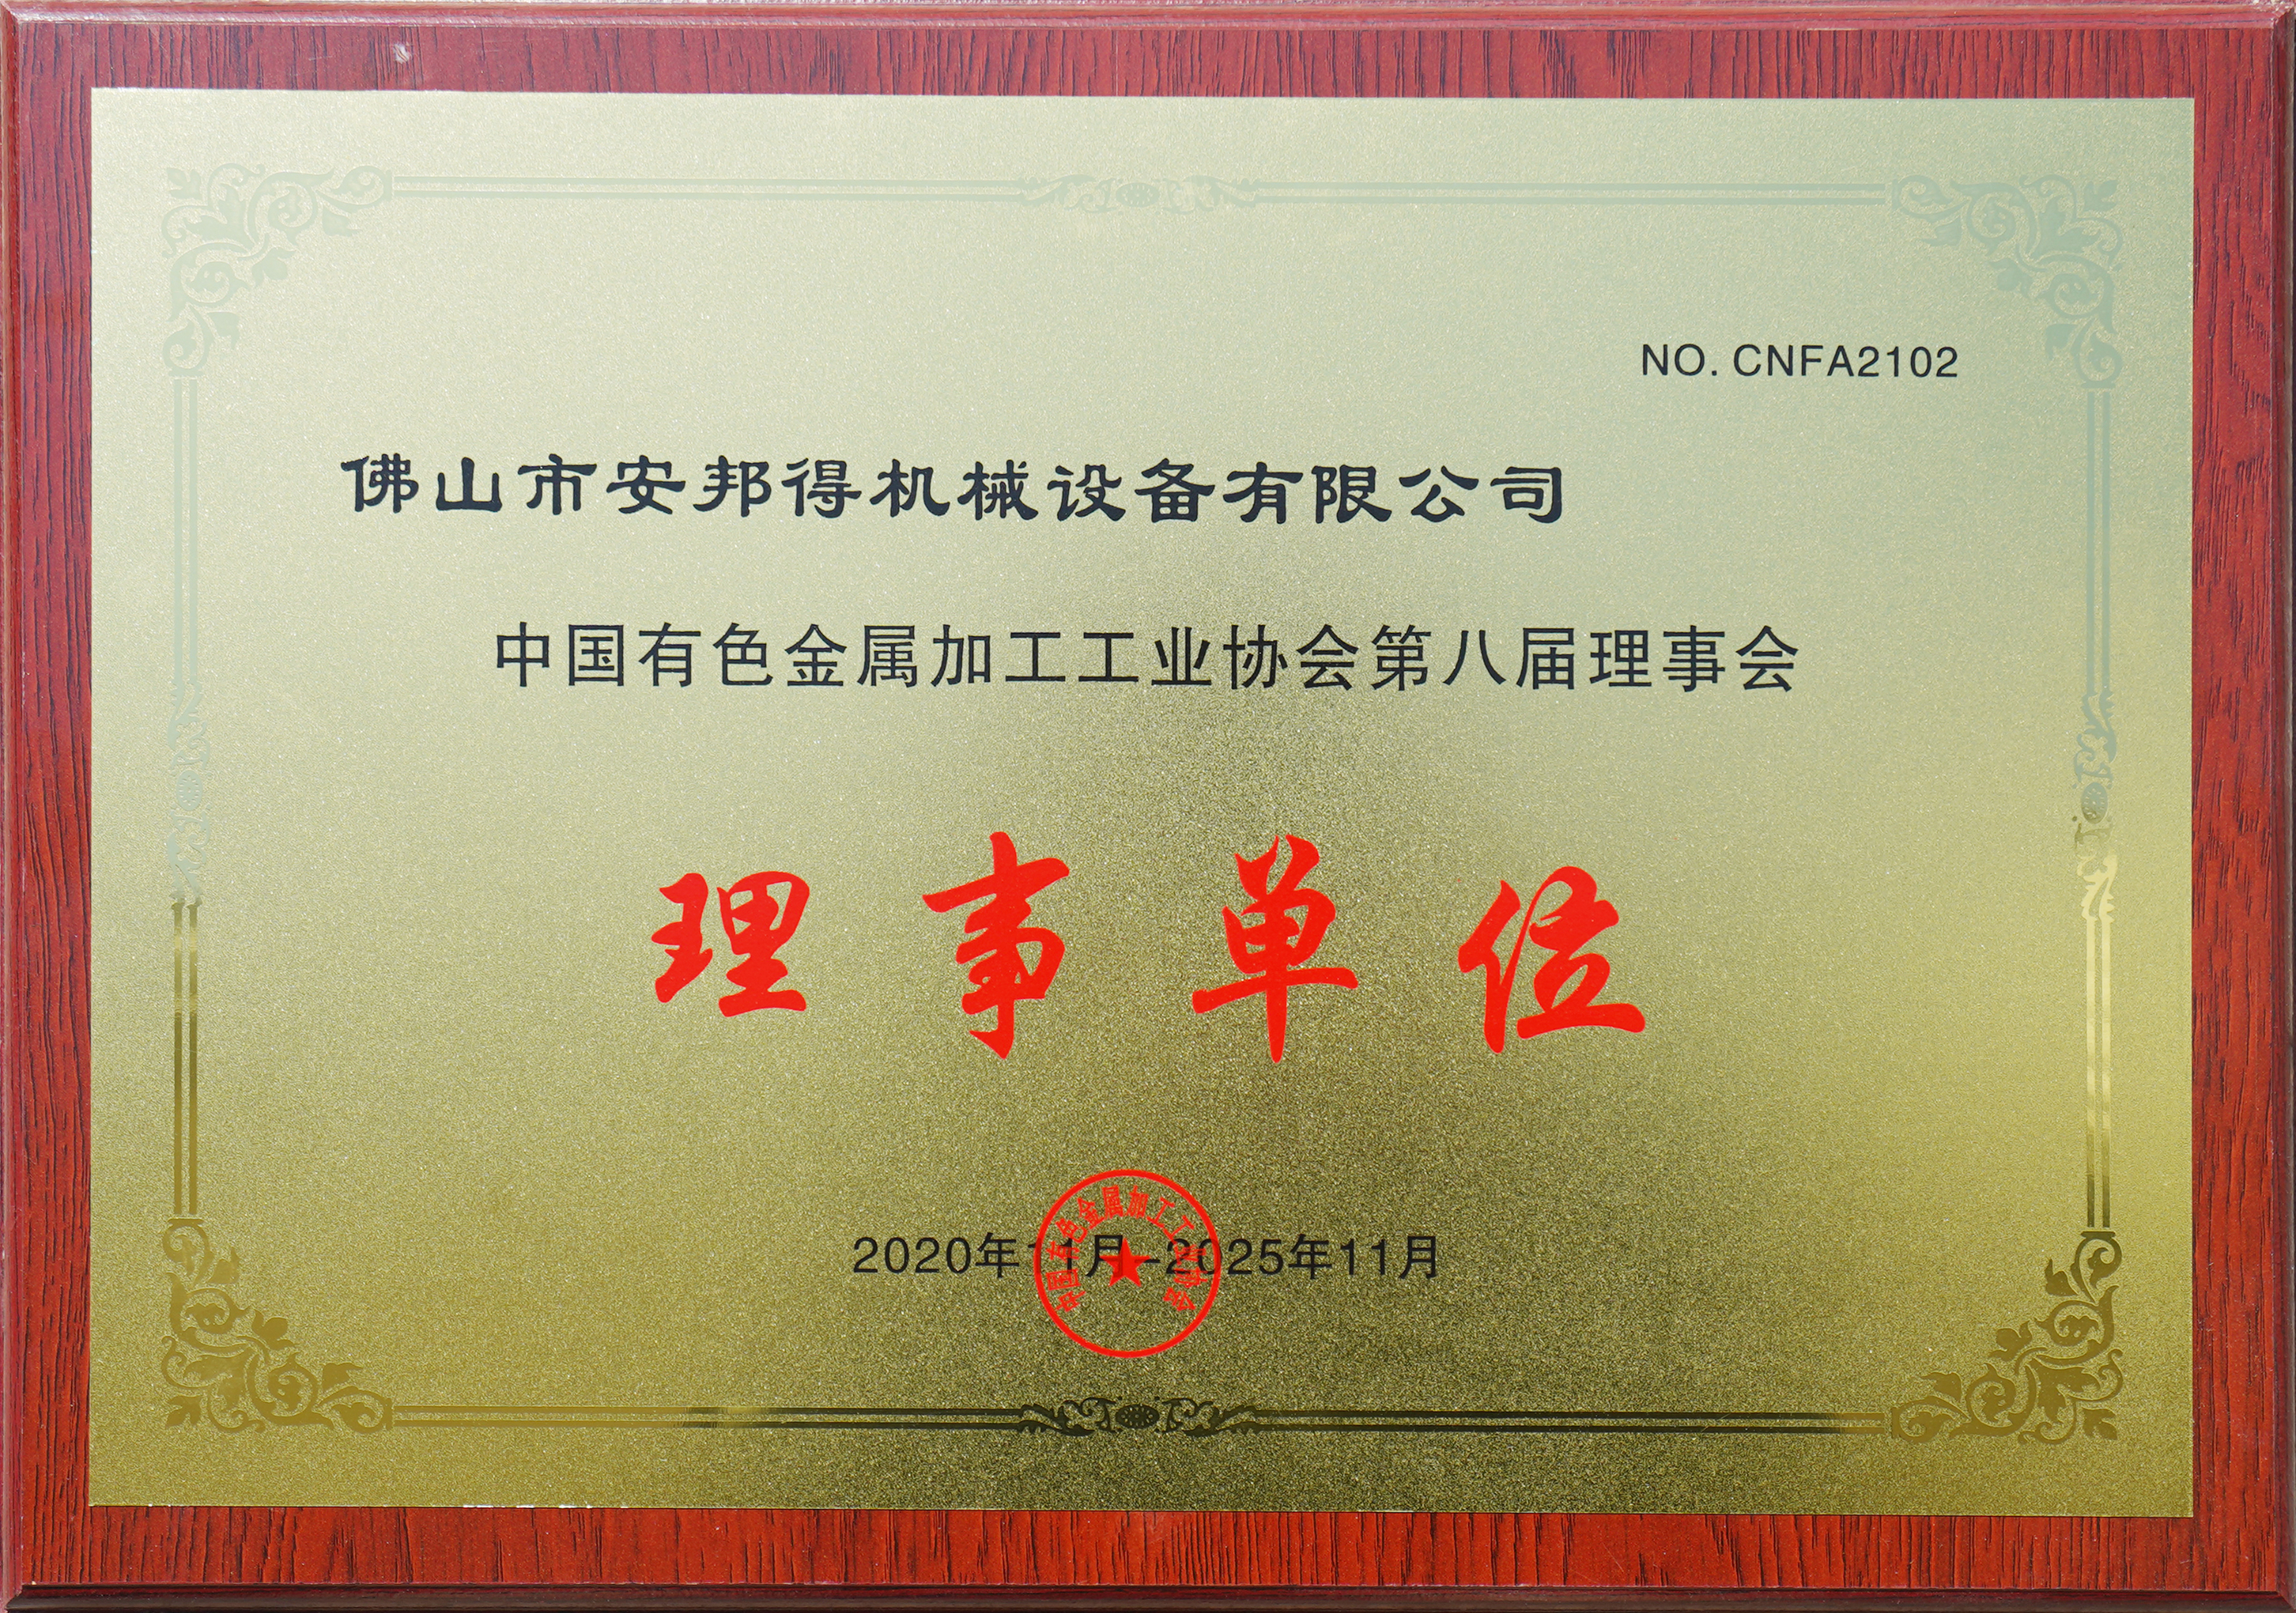 中国有色金属加工工业协会第八届理事会理事单位